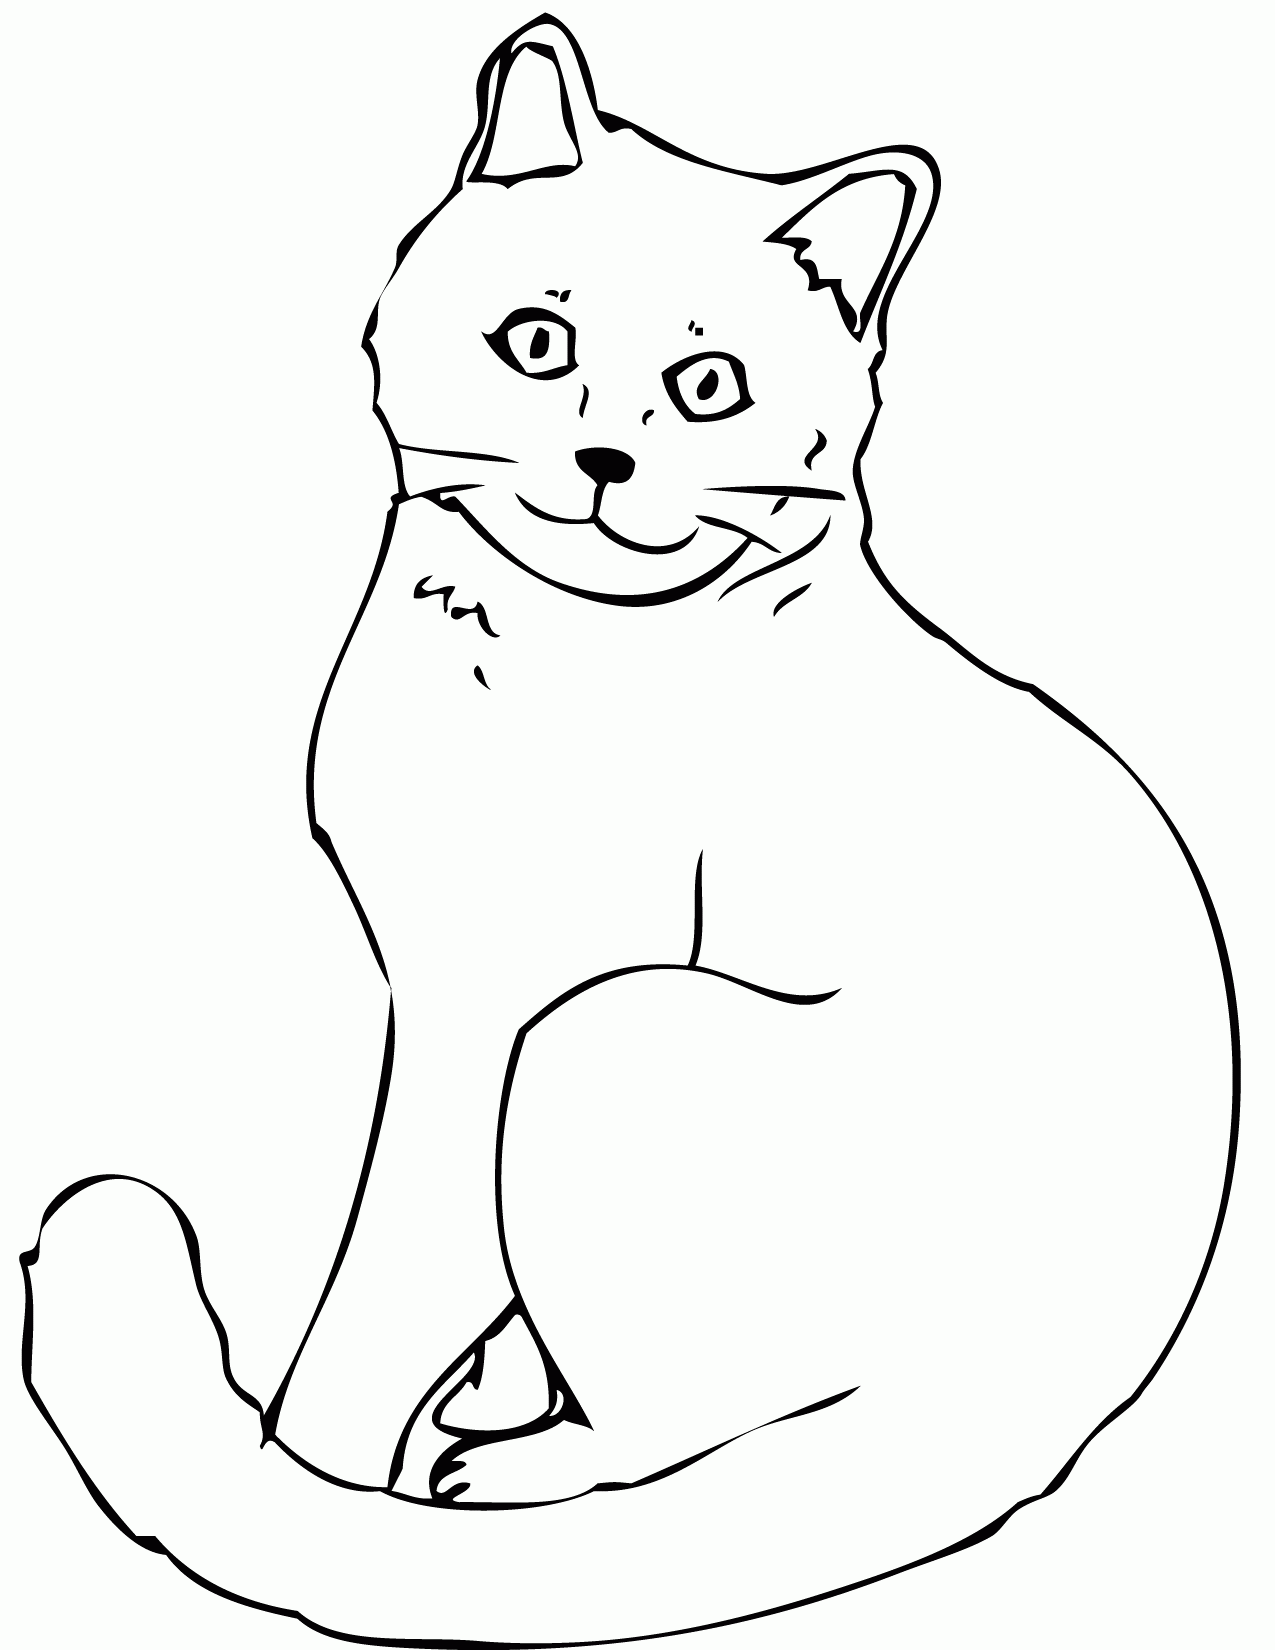 Kolorowanka kot dorosły i zadbany siedzi z zawiniętym ogonem i się uśmiecha podnosząc uszy